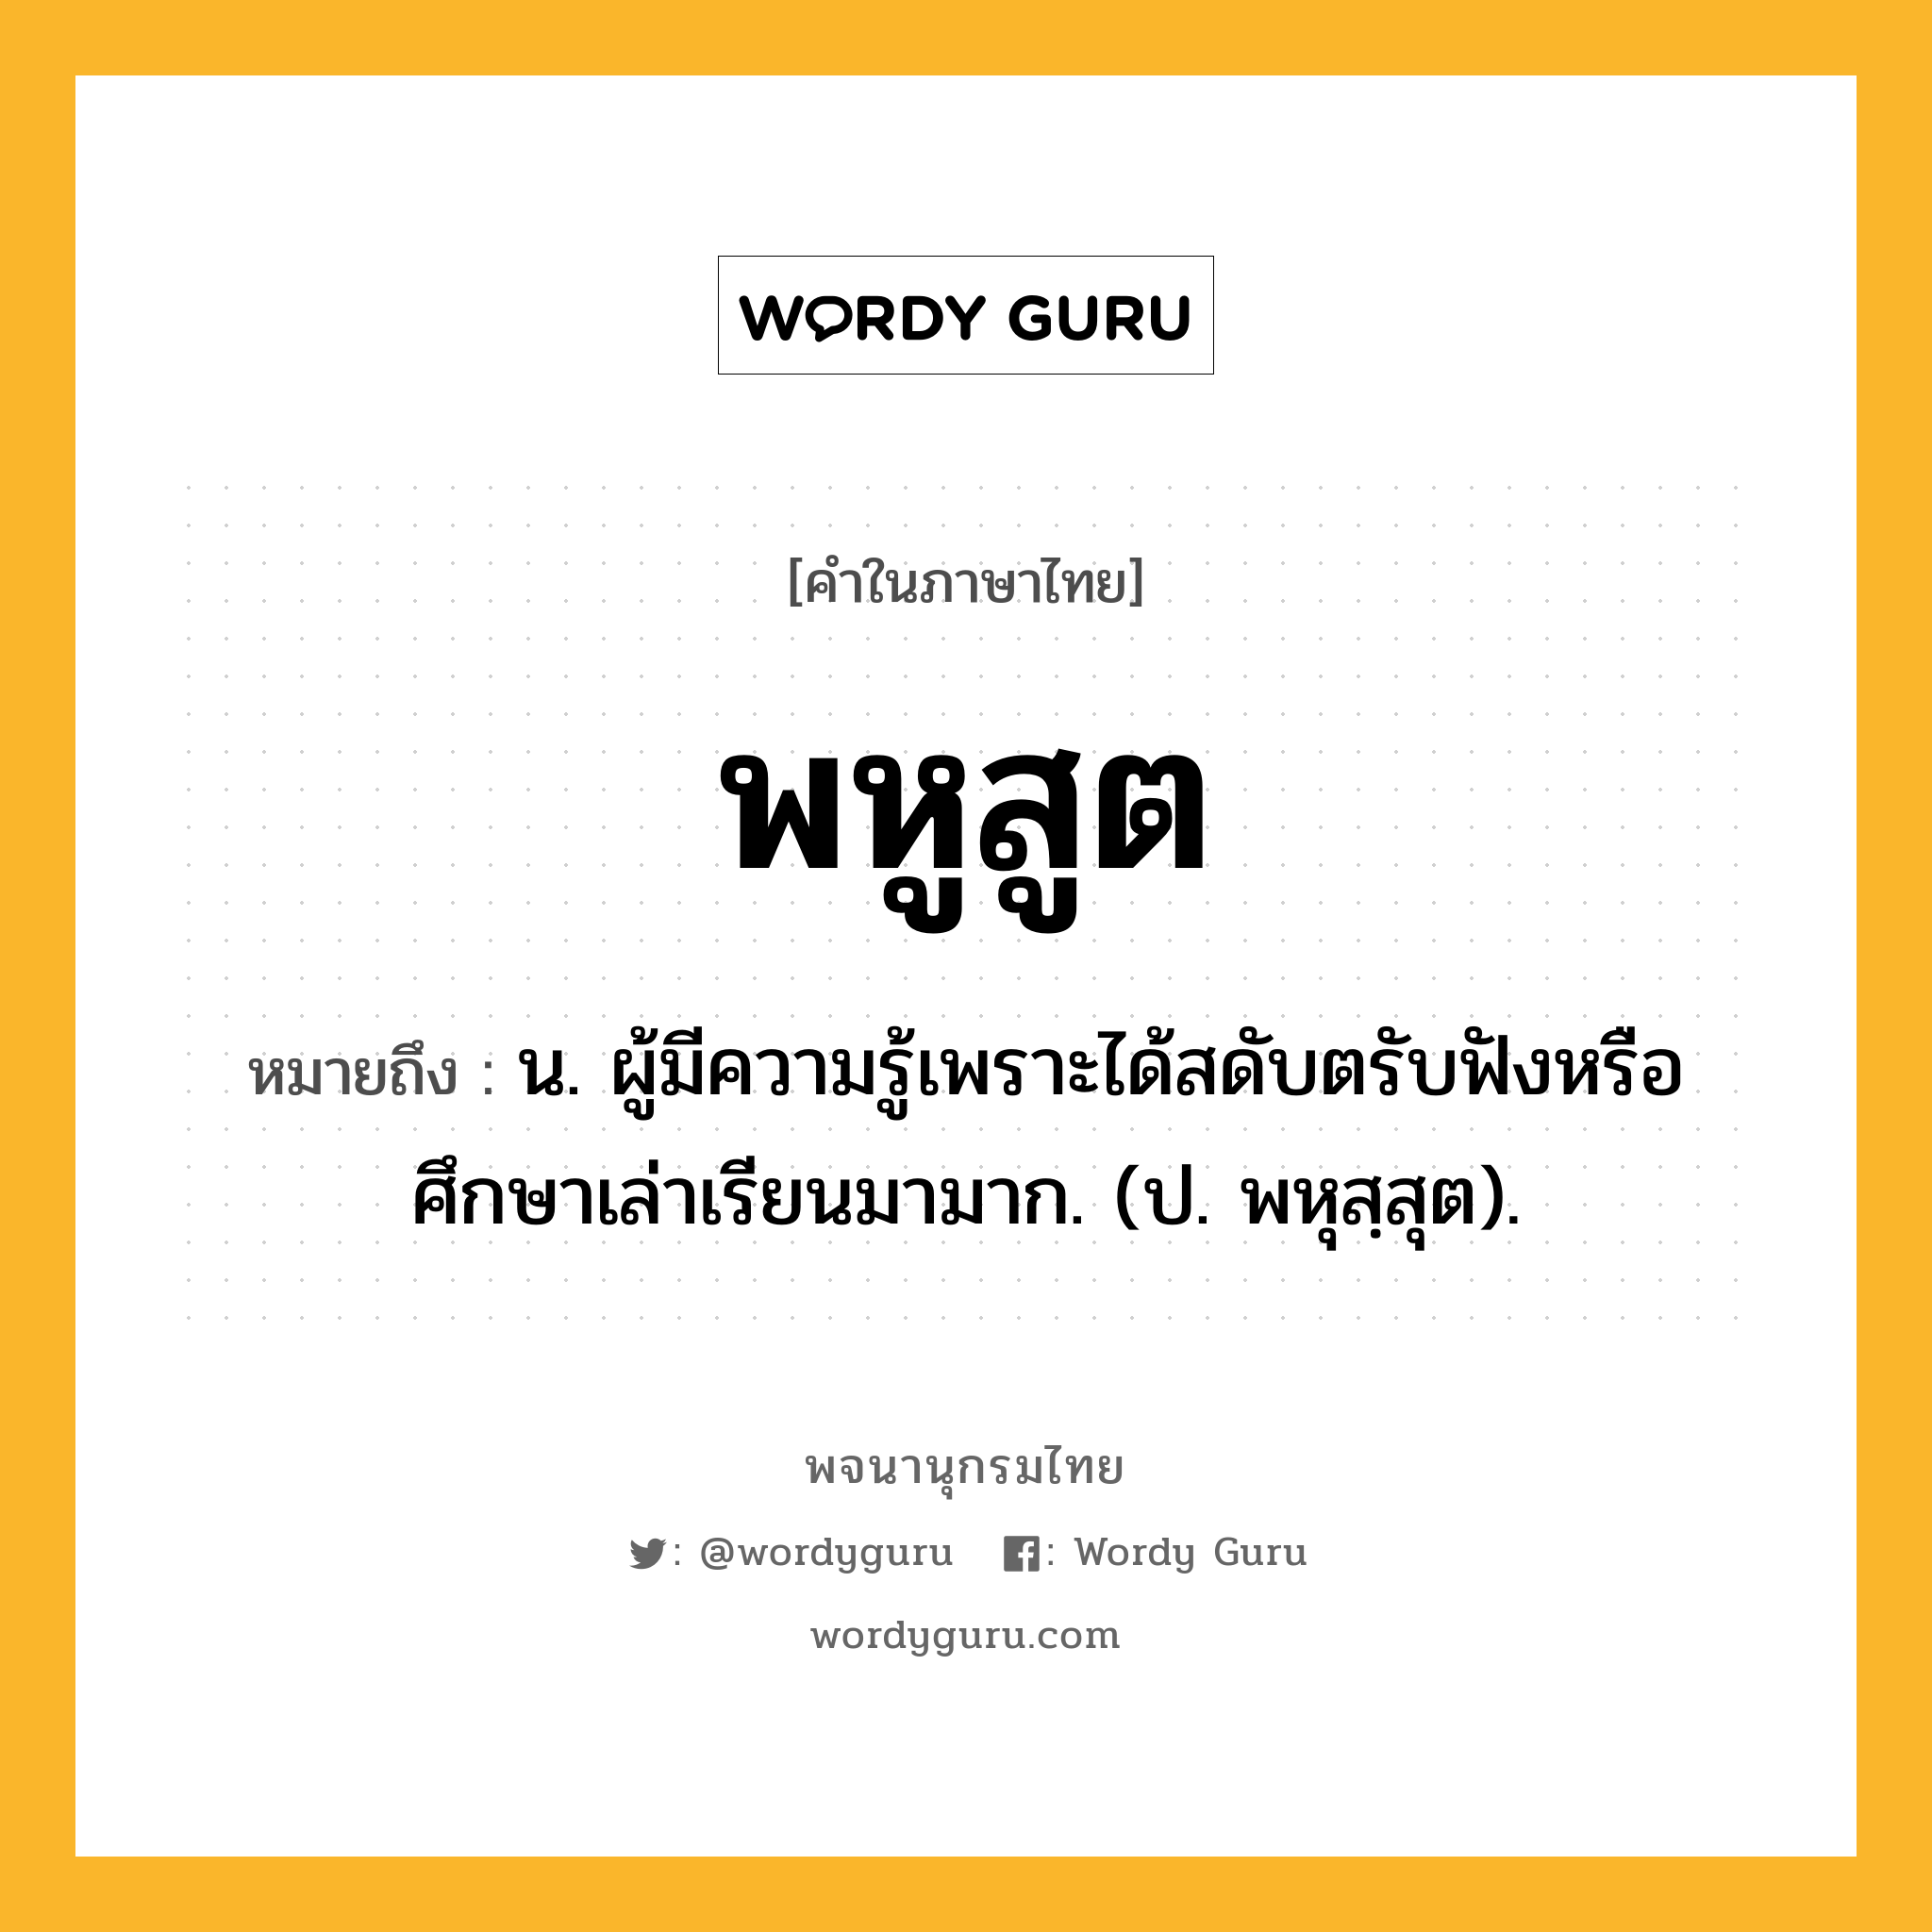 พหูสูต หมายถึงอะไร?, คำในภาษาไทย พหูสูต หมายถึง น. ผู้มีความรู้เพราะได้สดับตรับฟังหรือศึกษาเล่าเรียนมามาก. (ป. พหุสฺสุต).